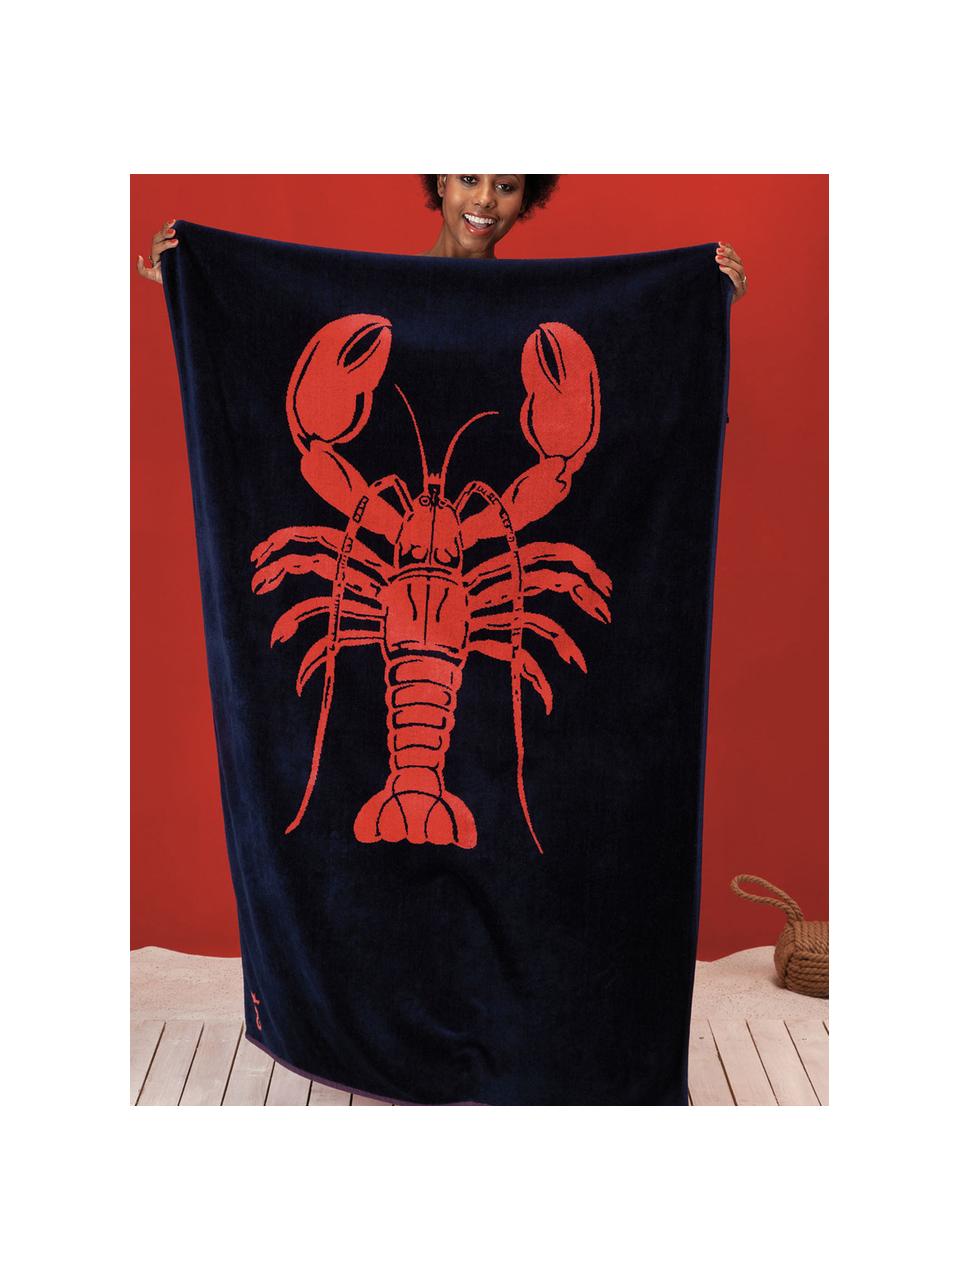 Fouta de plage Lobster, 100 % velours (coton)
Grammage intermédiaire du tissu, 420 g/m², Bleu foncé, orange, larg. 100 x long. 180 cm